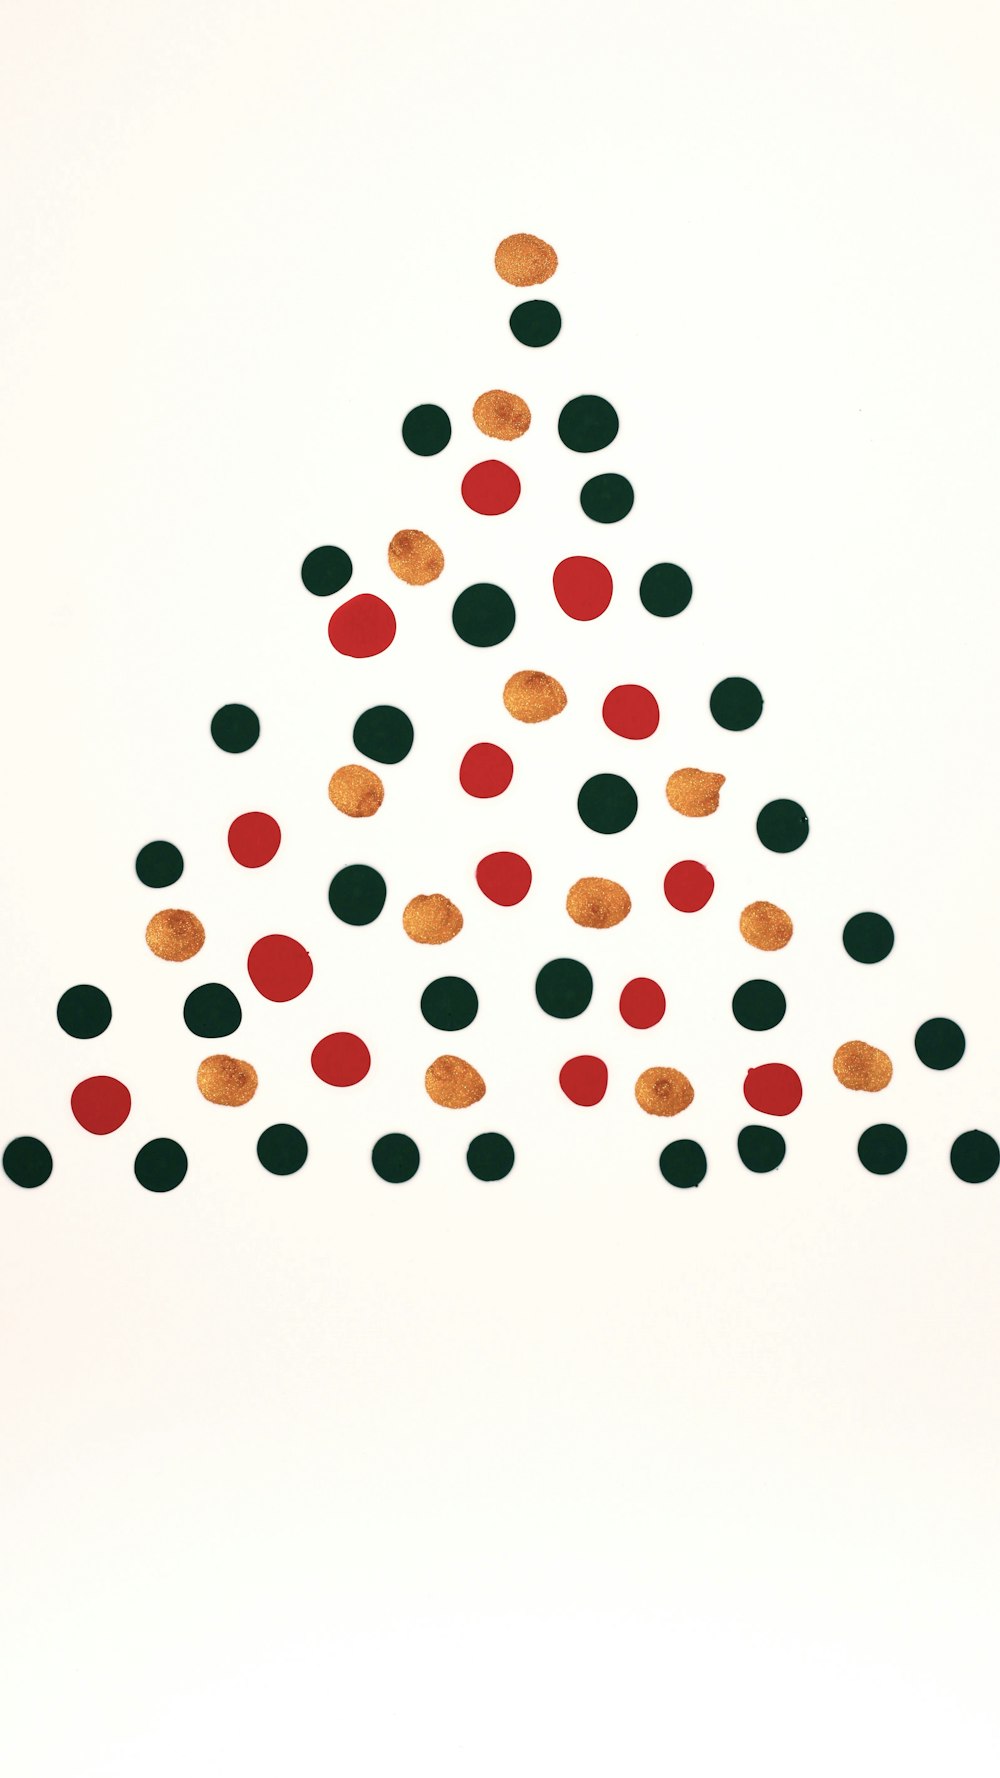 원으로 만든 크리스마스 트리 그림